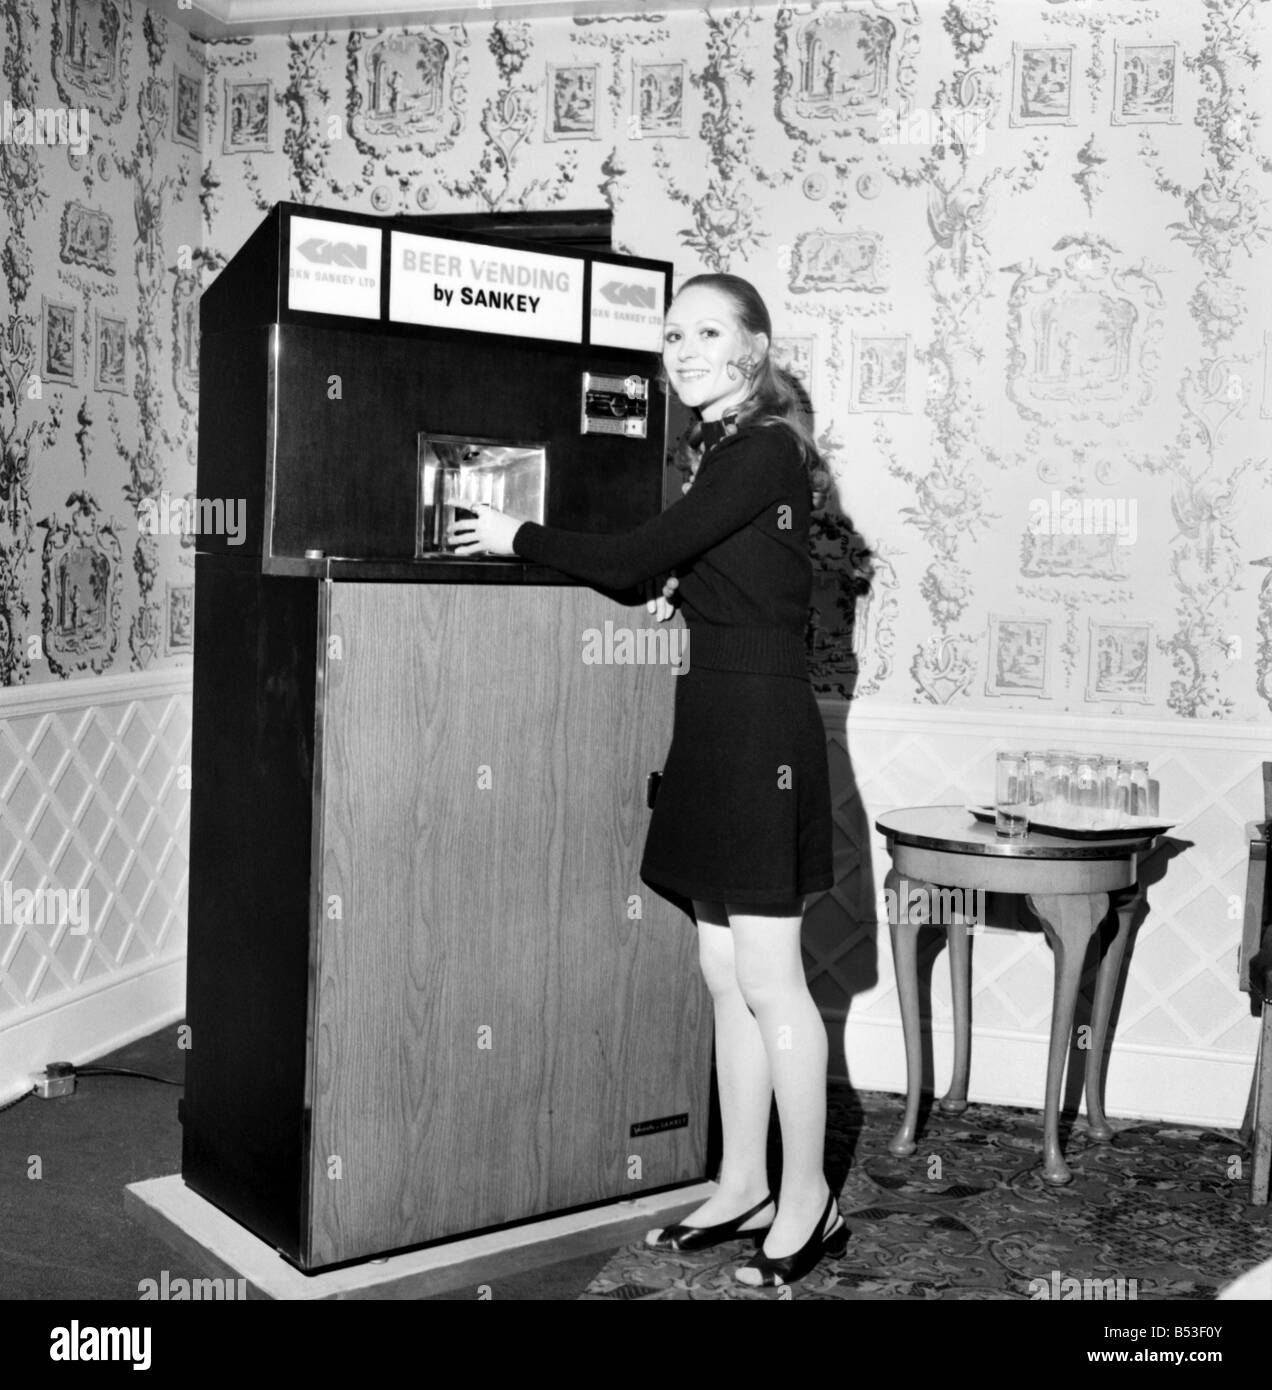 Invenzioni: Gran Bretagna il primo frigorifero automatico birra distributore automatico è stato dimostrato dalla birreria divisione di GKN Sankey Ltd., Bilston Staffs, a Quaglino's Bury Street, Londra. Donna con la parte anteriore del autobarmaid aperto che mostra la parte interna. Dicembre 1969 Z11595 Foto Stock